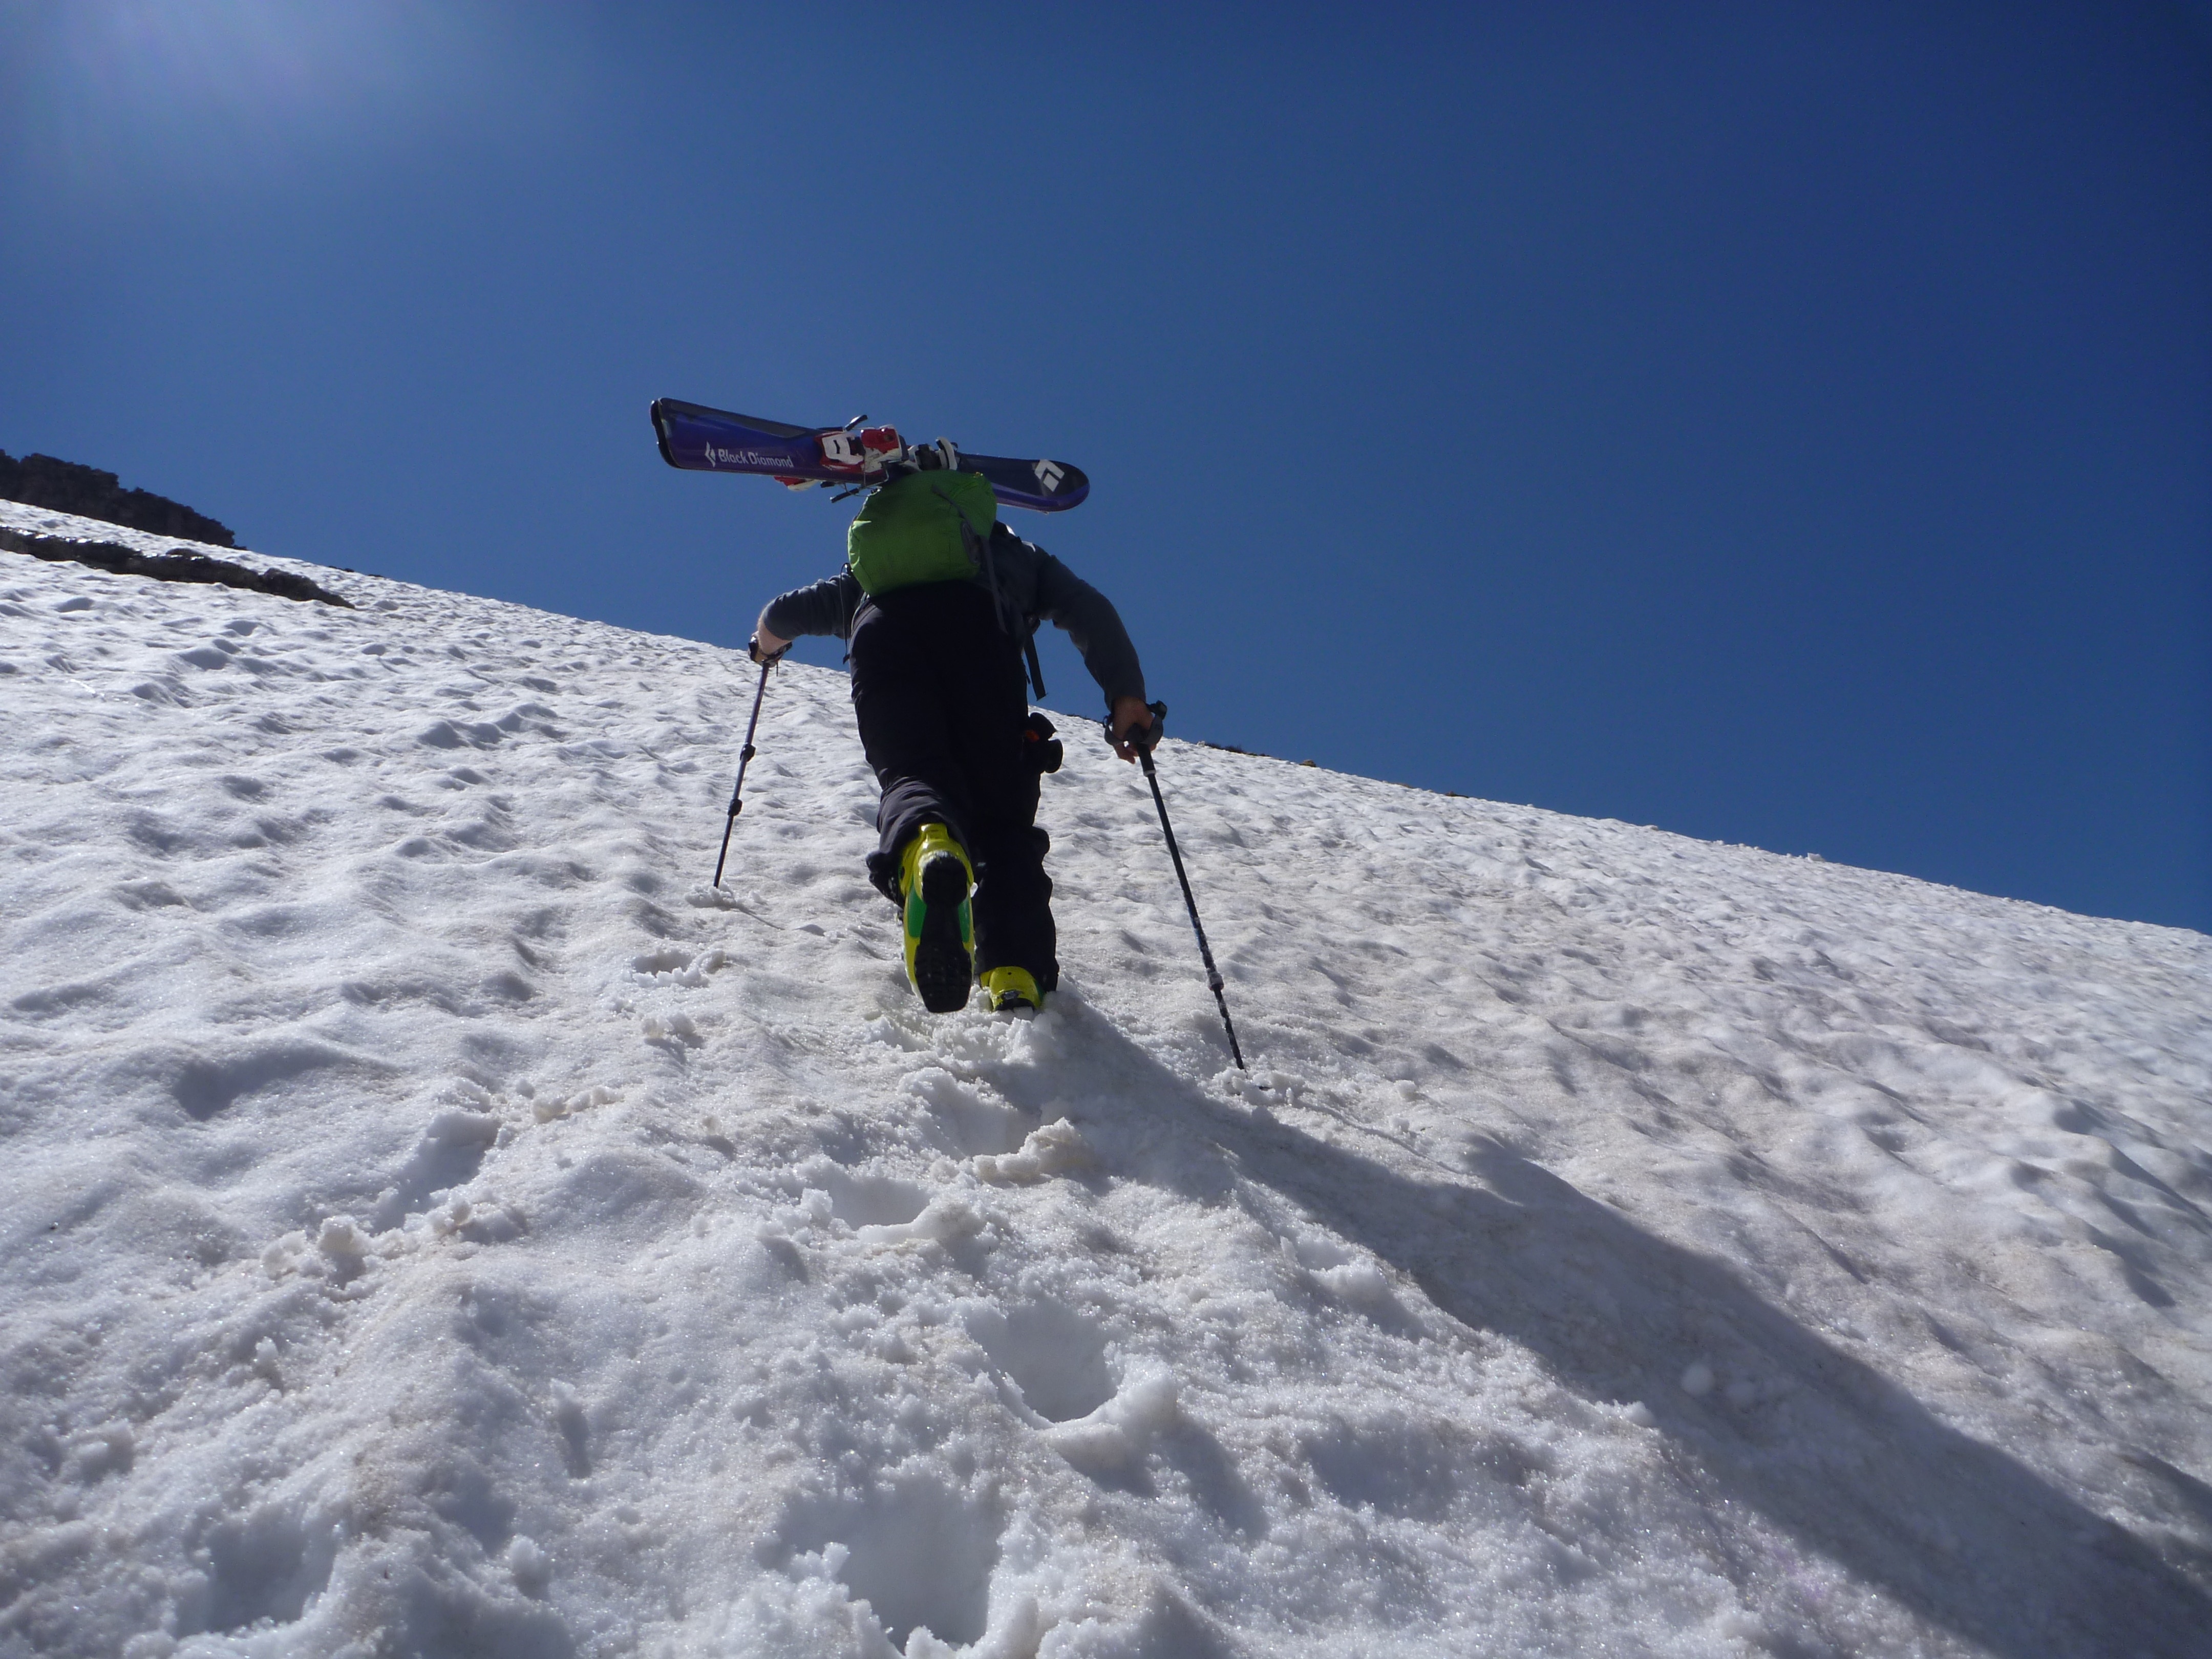 Ice skis. Горные лыжи фото в горах. Телемарка катание с гор. Фотография лыжника взбирающегося на гору. Обувь лыжника.